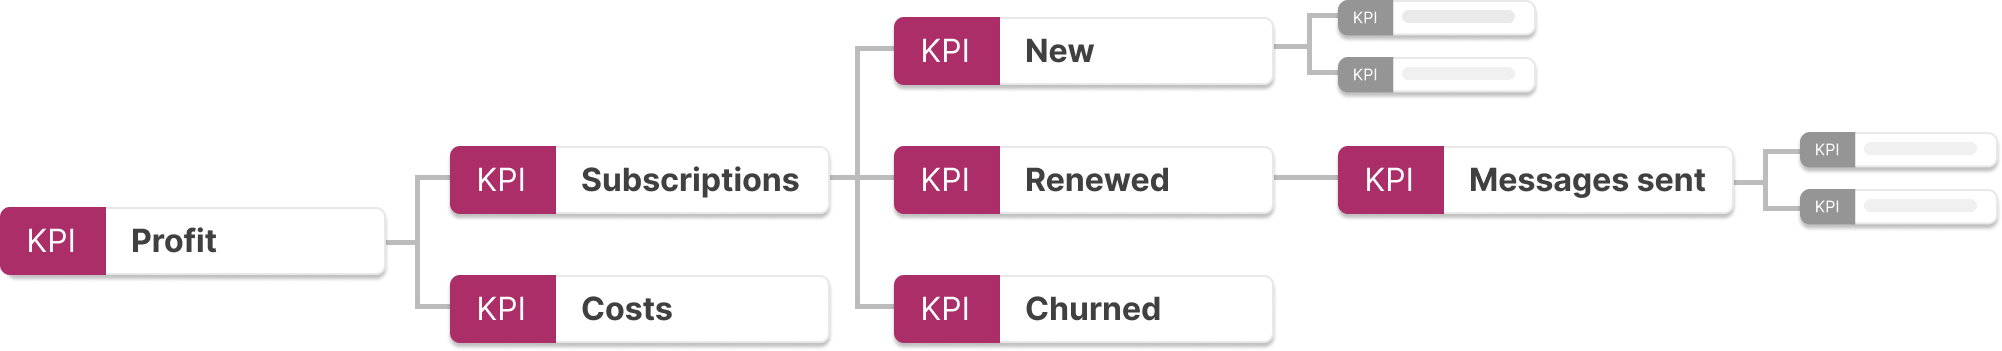 KPI Tree